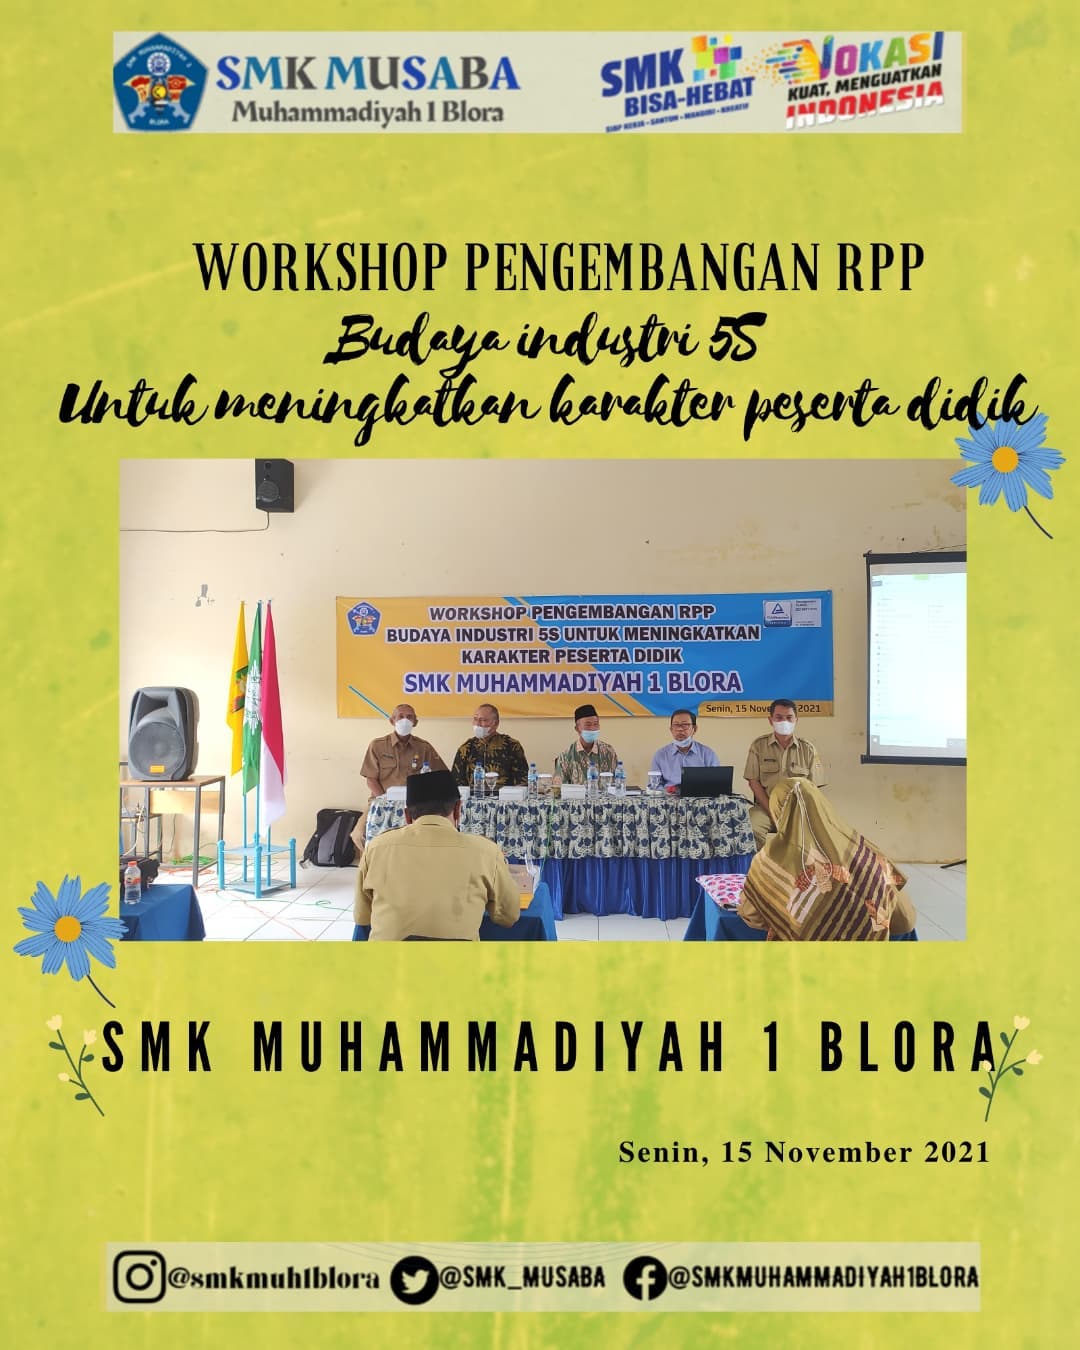 Workshop Pengembangan RPP - Budaya Industri 5S